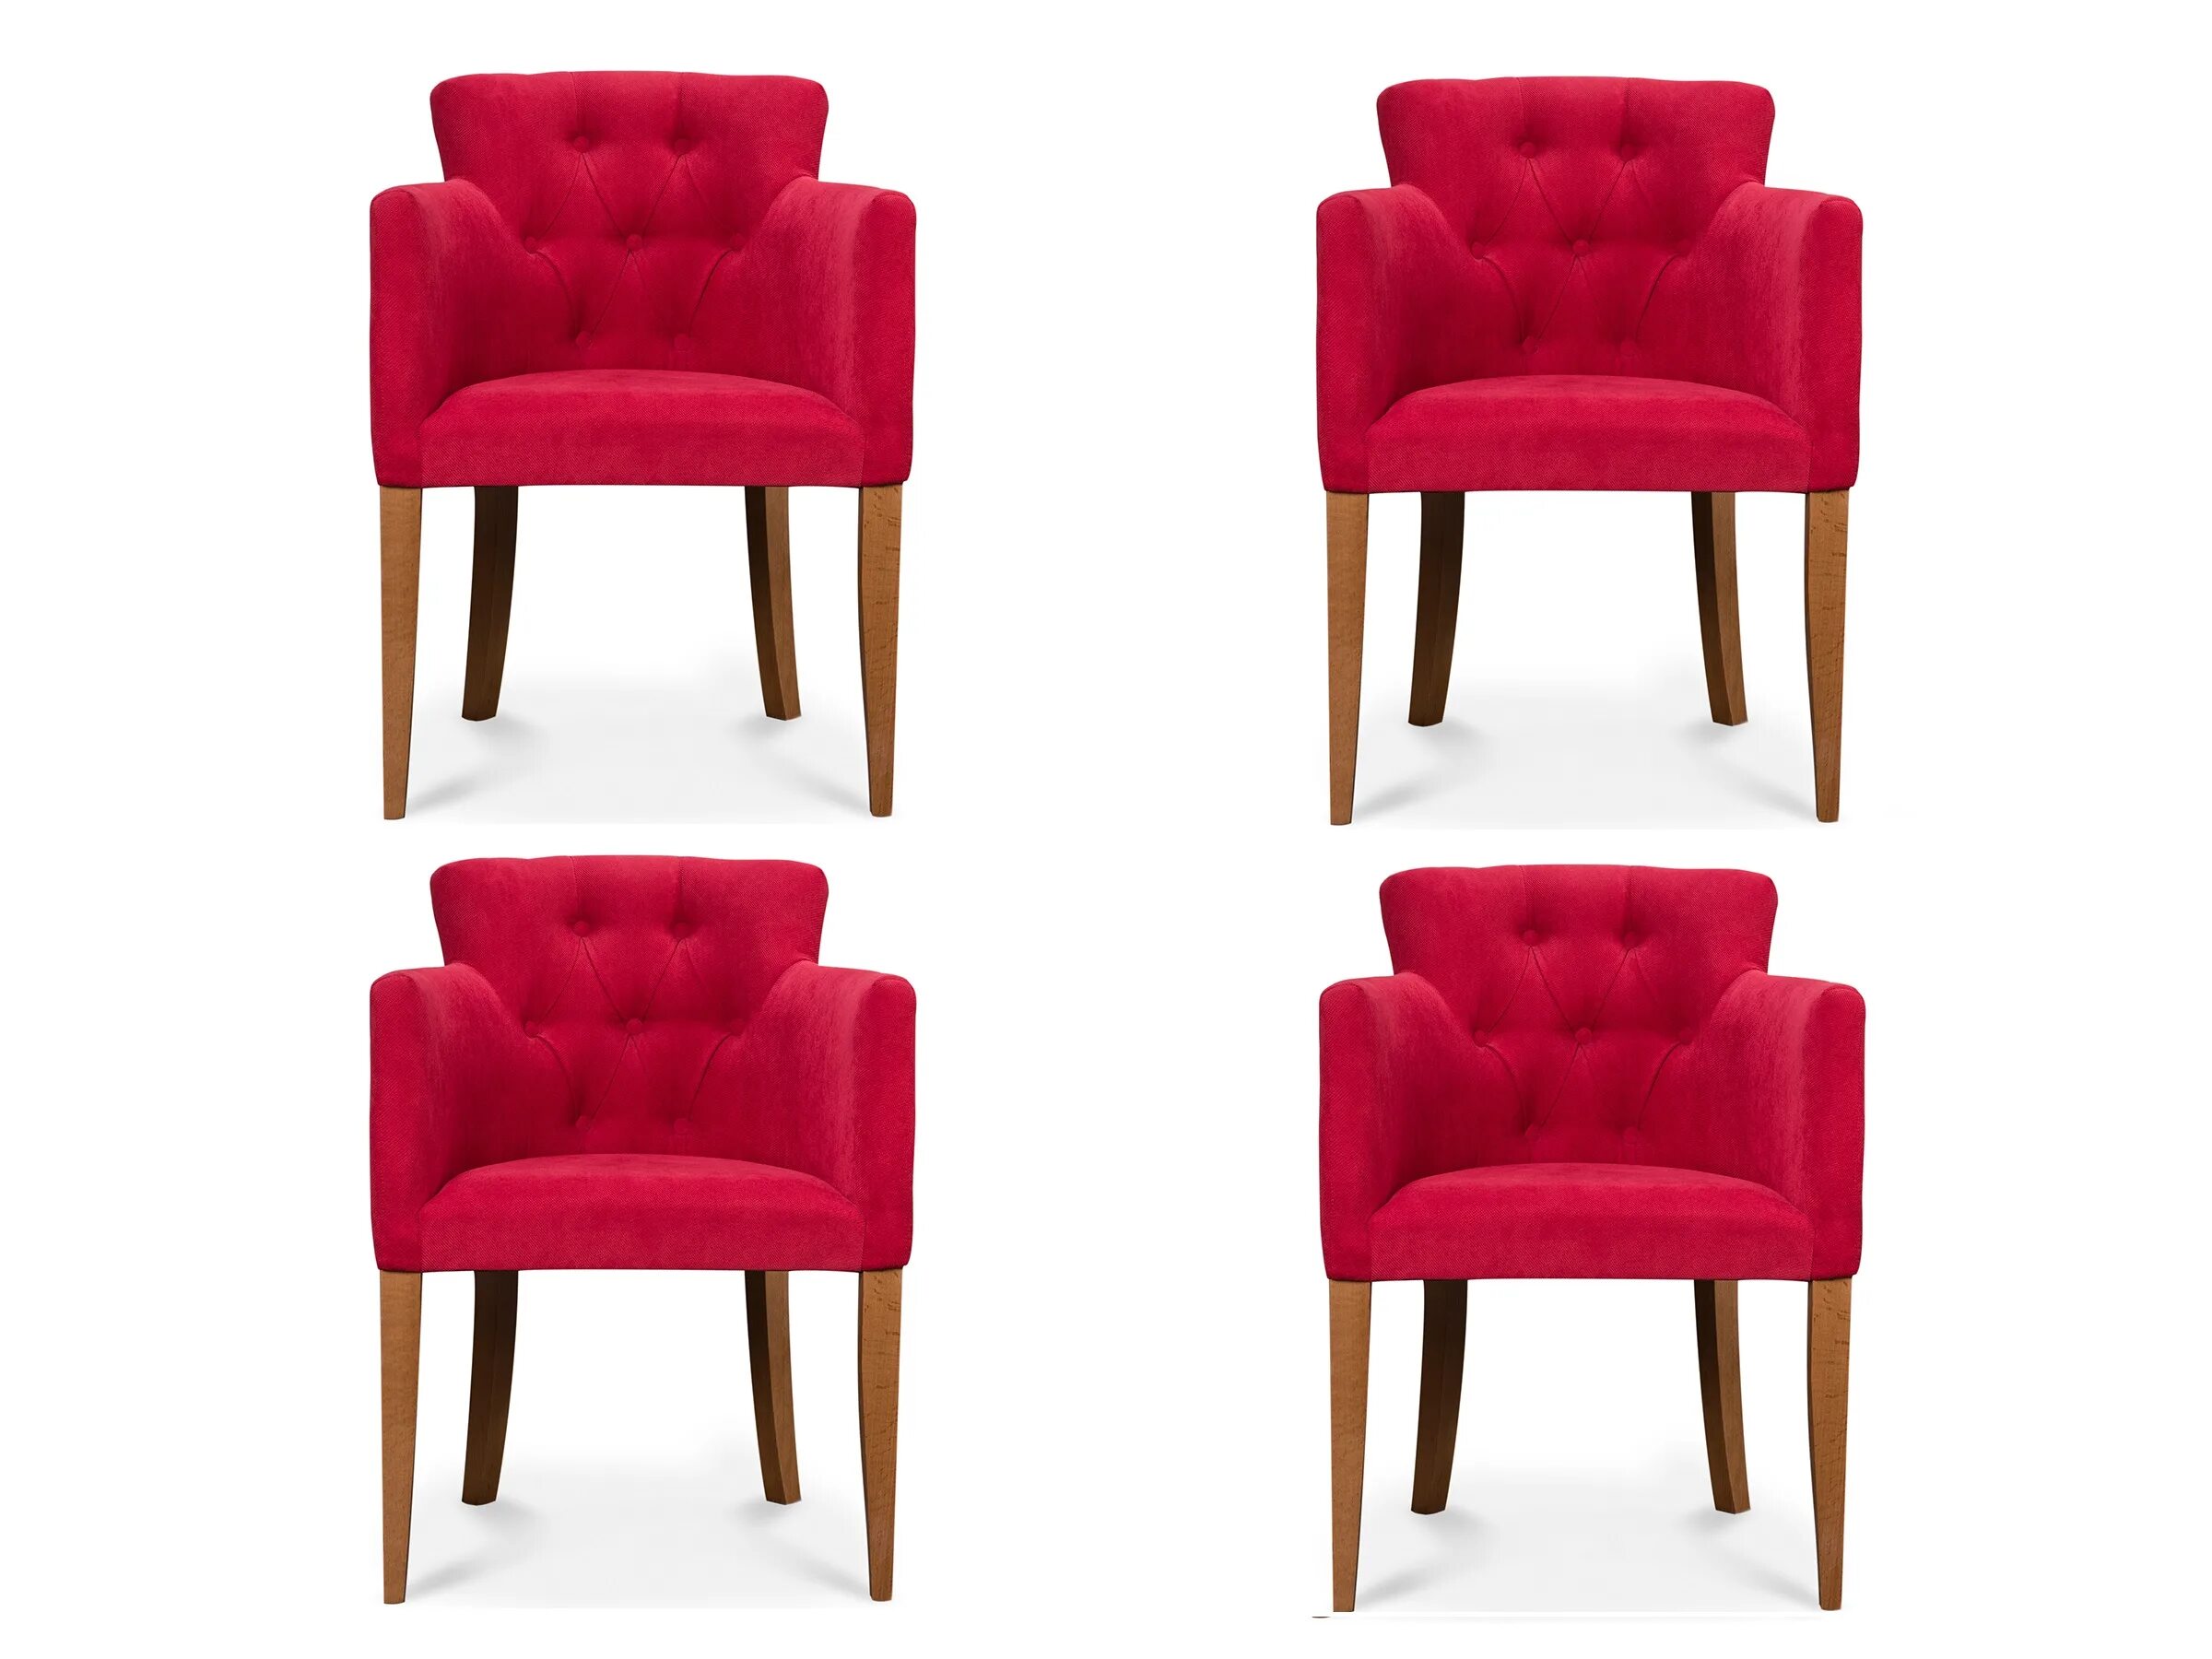 This is my chairs. Четыре стула. Стул универсальный. Стул кухонный Aron. Стул Арона.